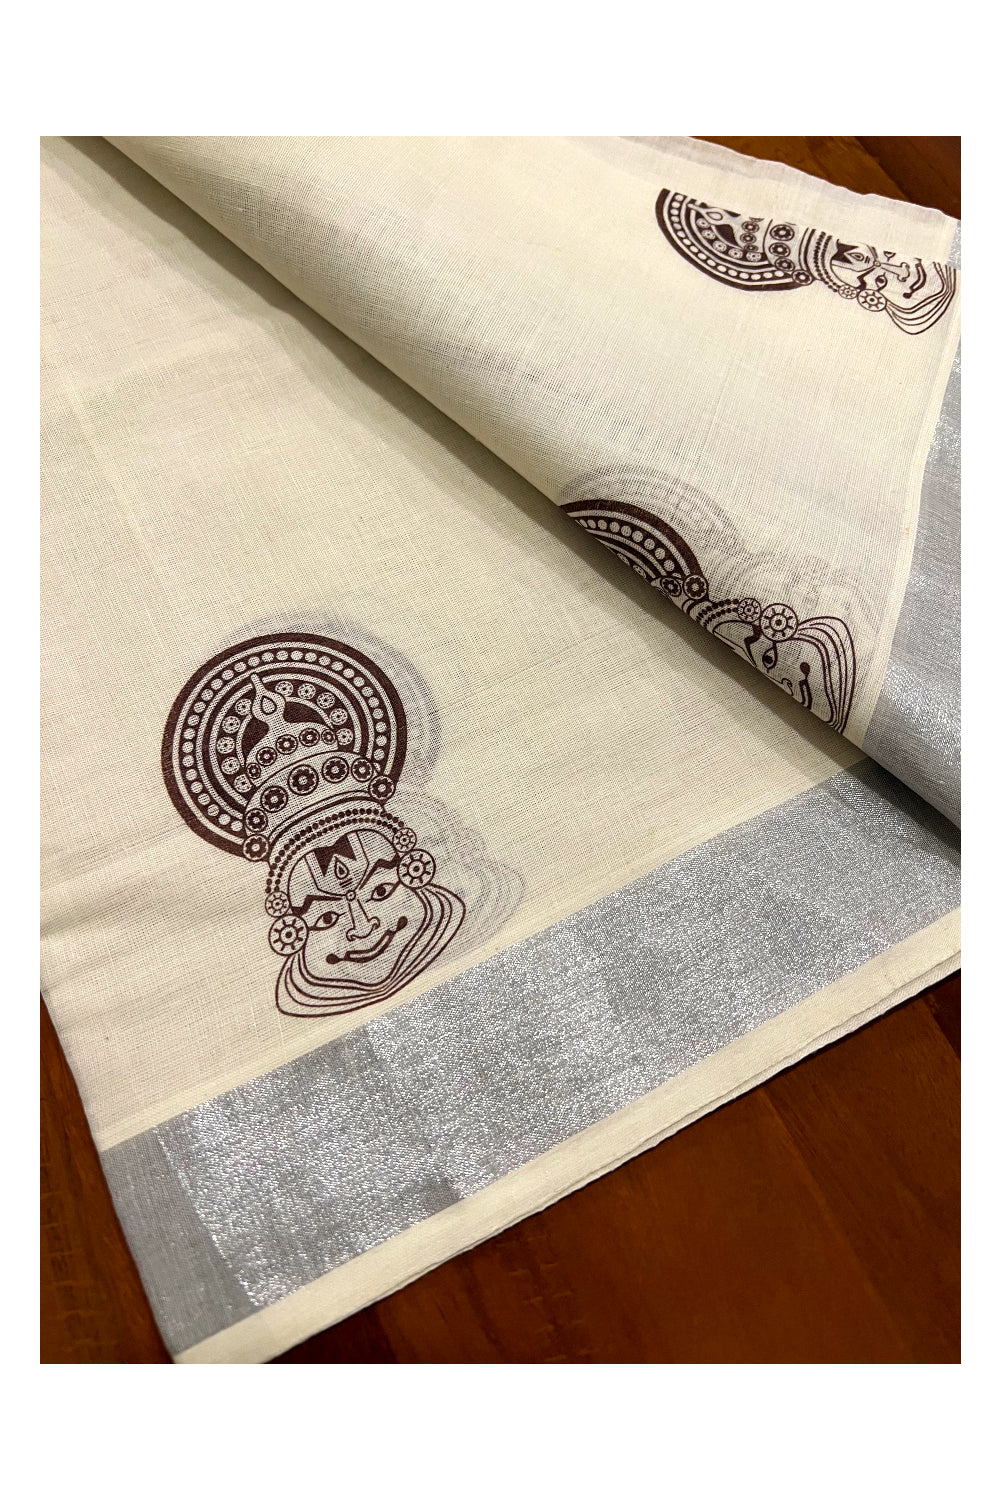 Pure Cotton Kerala Silver Kasavu Set Mundu (Mundum Neriyathum) with Kathakali Block Prints on Dark Brown Border